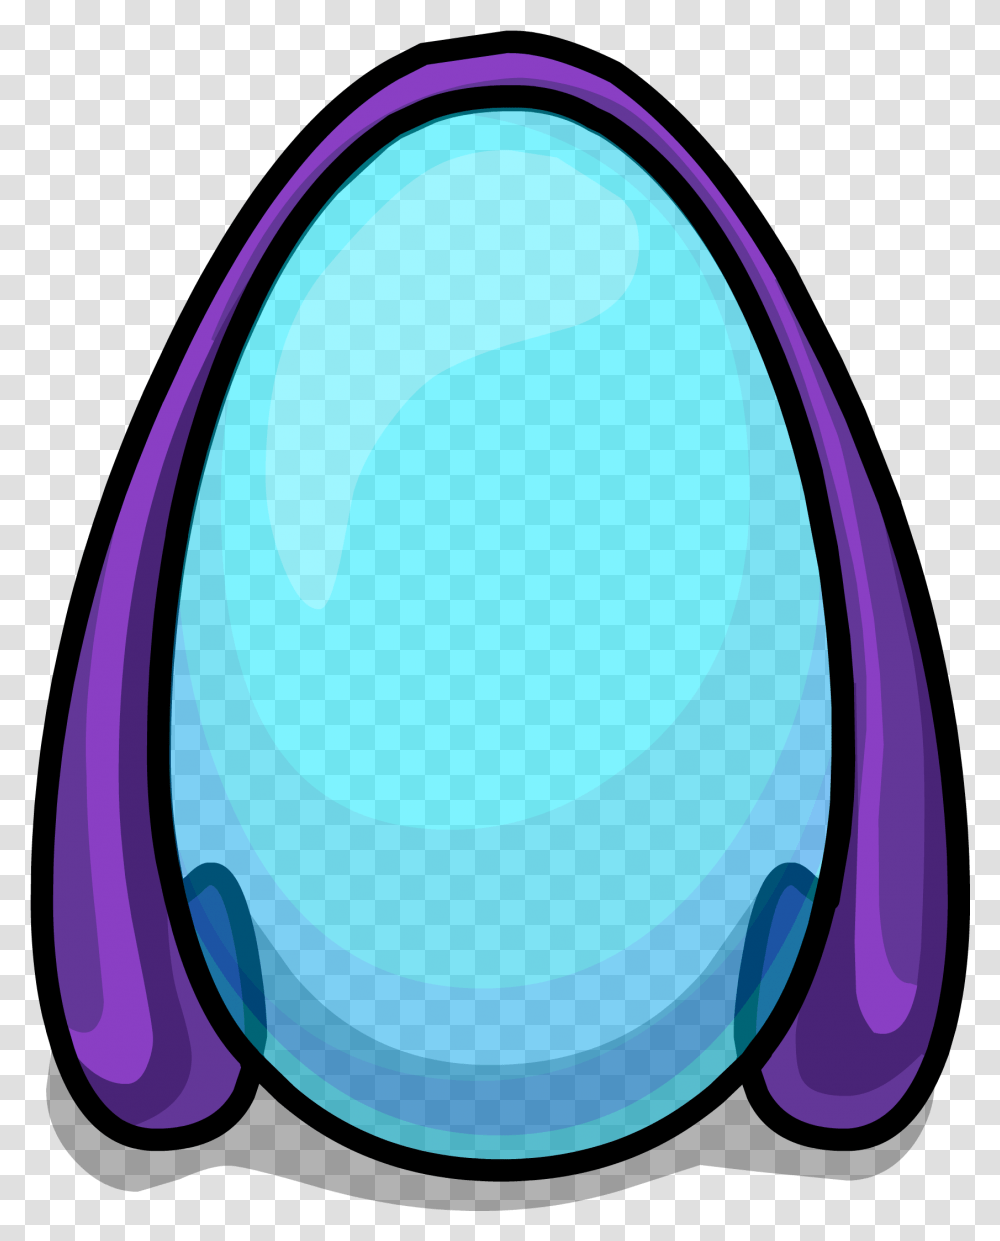 Force Field Sprite 006 Dot, Food, Egg, Easter Egg Transparent Png